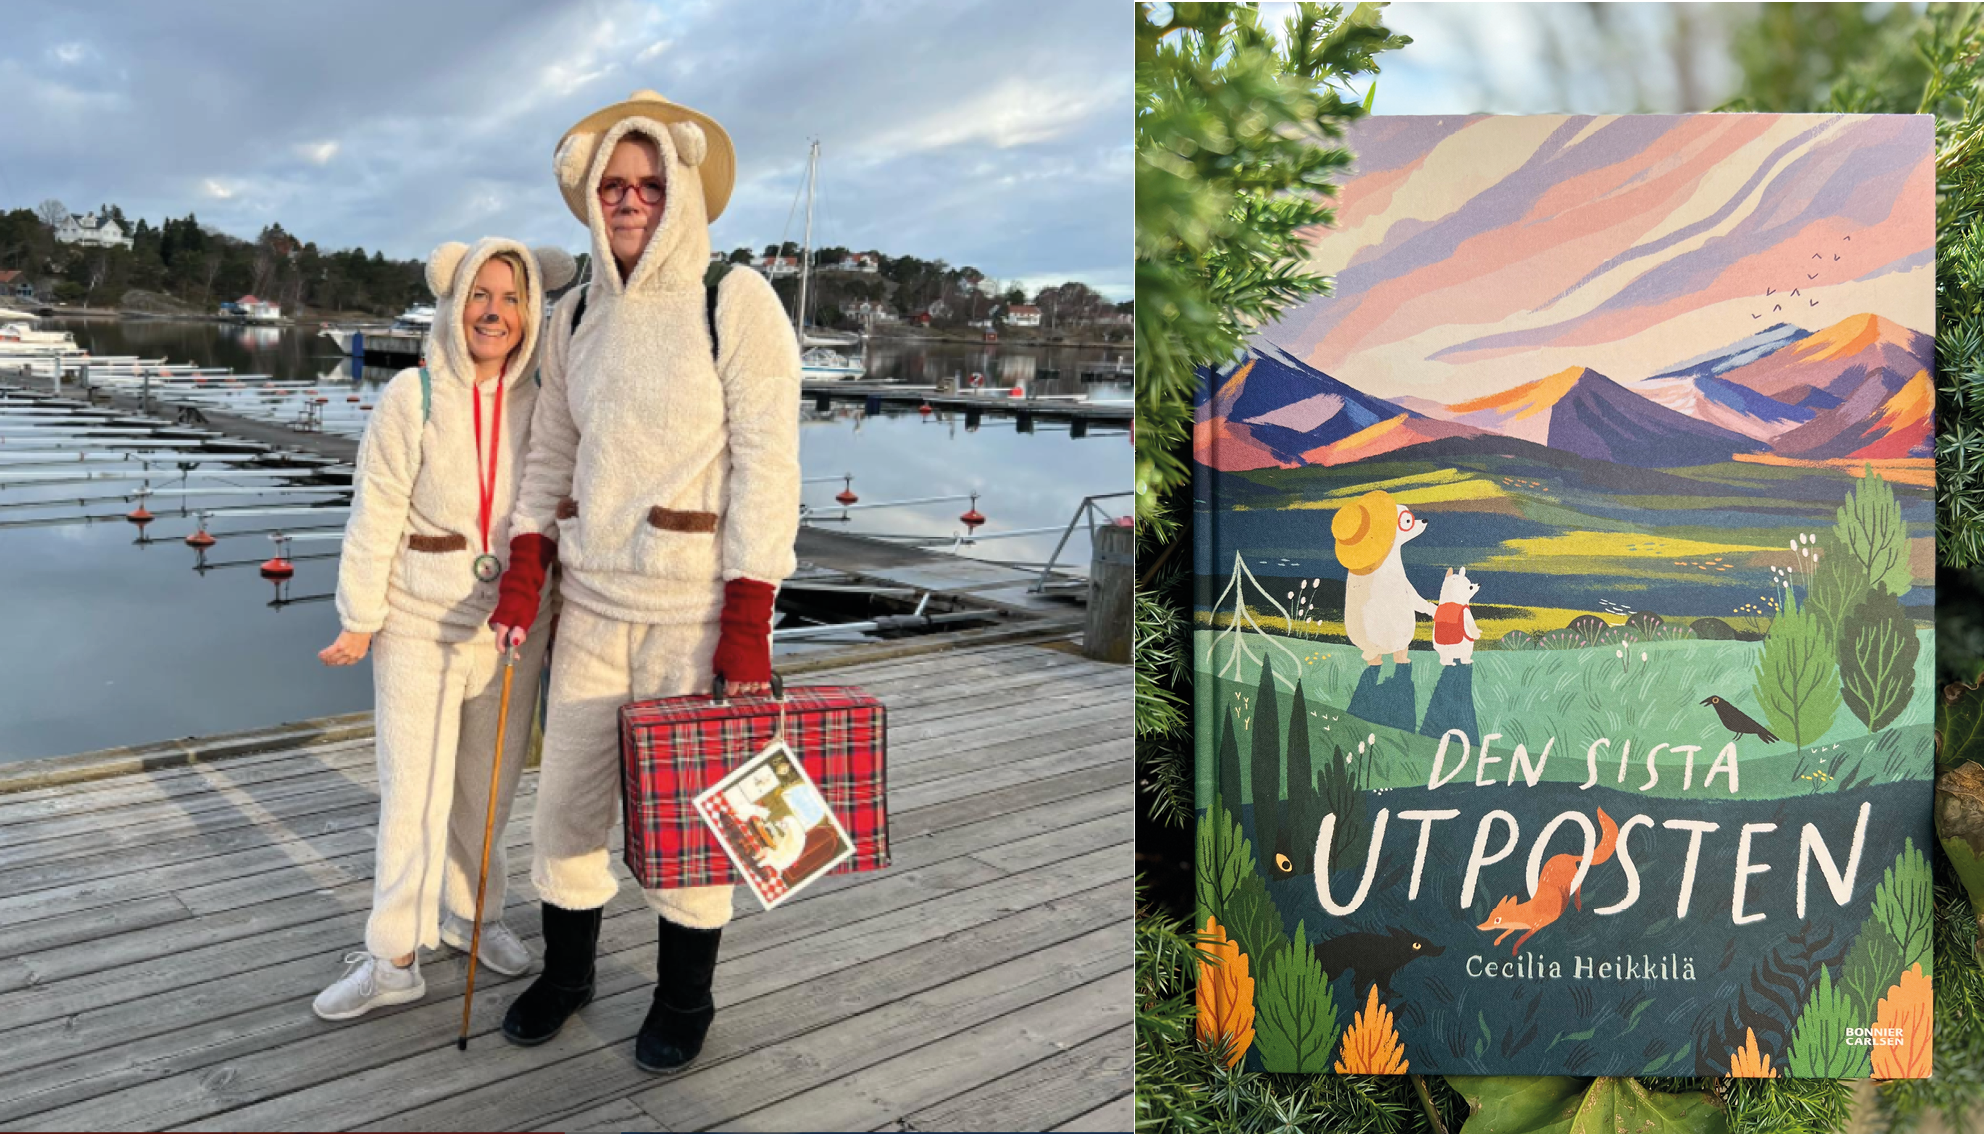 Till vänster står Ulrika Groth och Lotta Holmlund på bryggan klädda som lilla björn och morfar björn, karaktärer ur boken "Den sista utposten", vars omslag syns till höger.